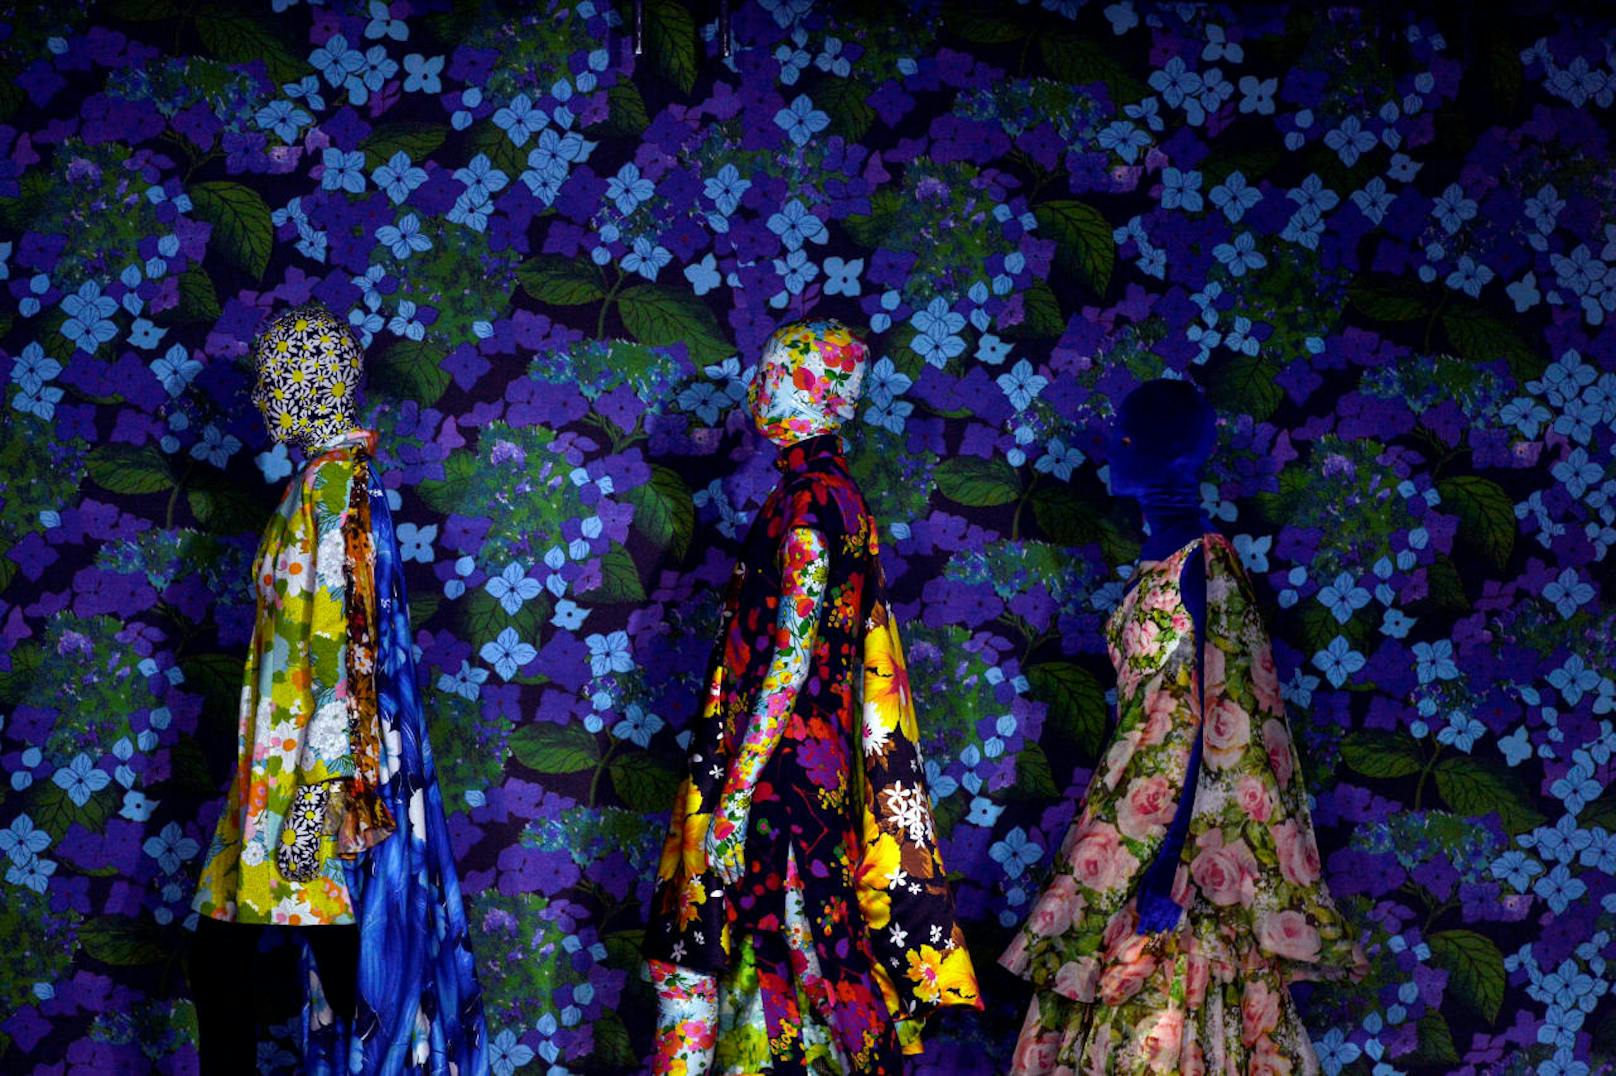 Richard Quinn's Blumen-Models dürften nicht allzu viel gesehen haben beim Run über den psychedelischen Tapeten-Catwalk. London Fashion Week 2017.